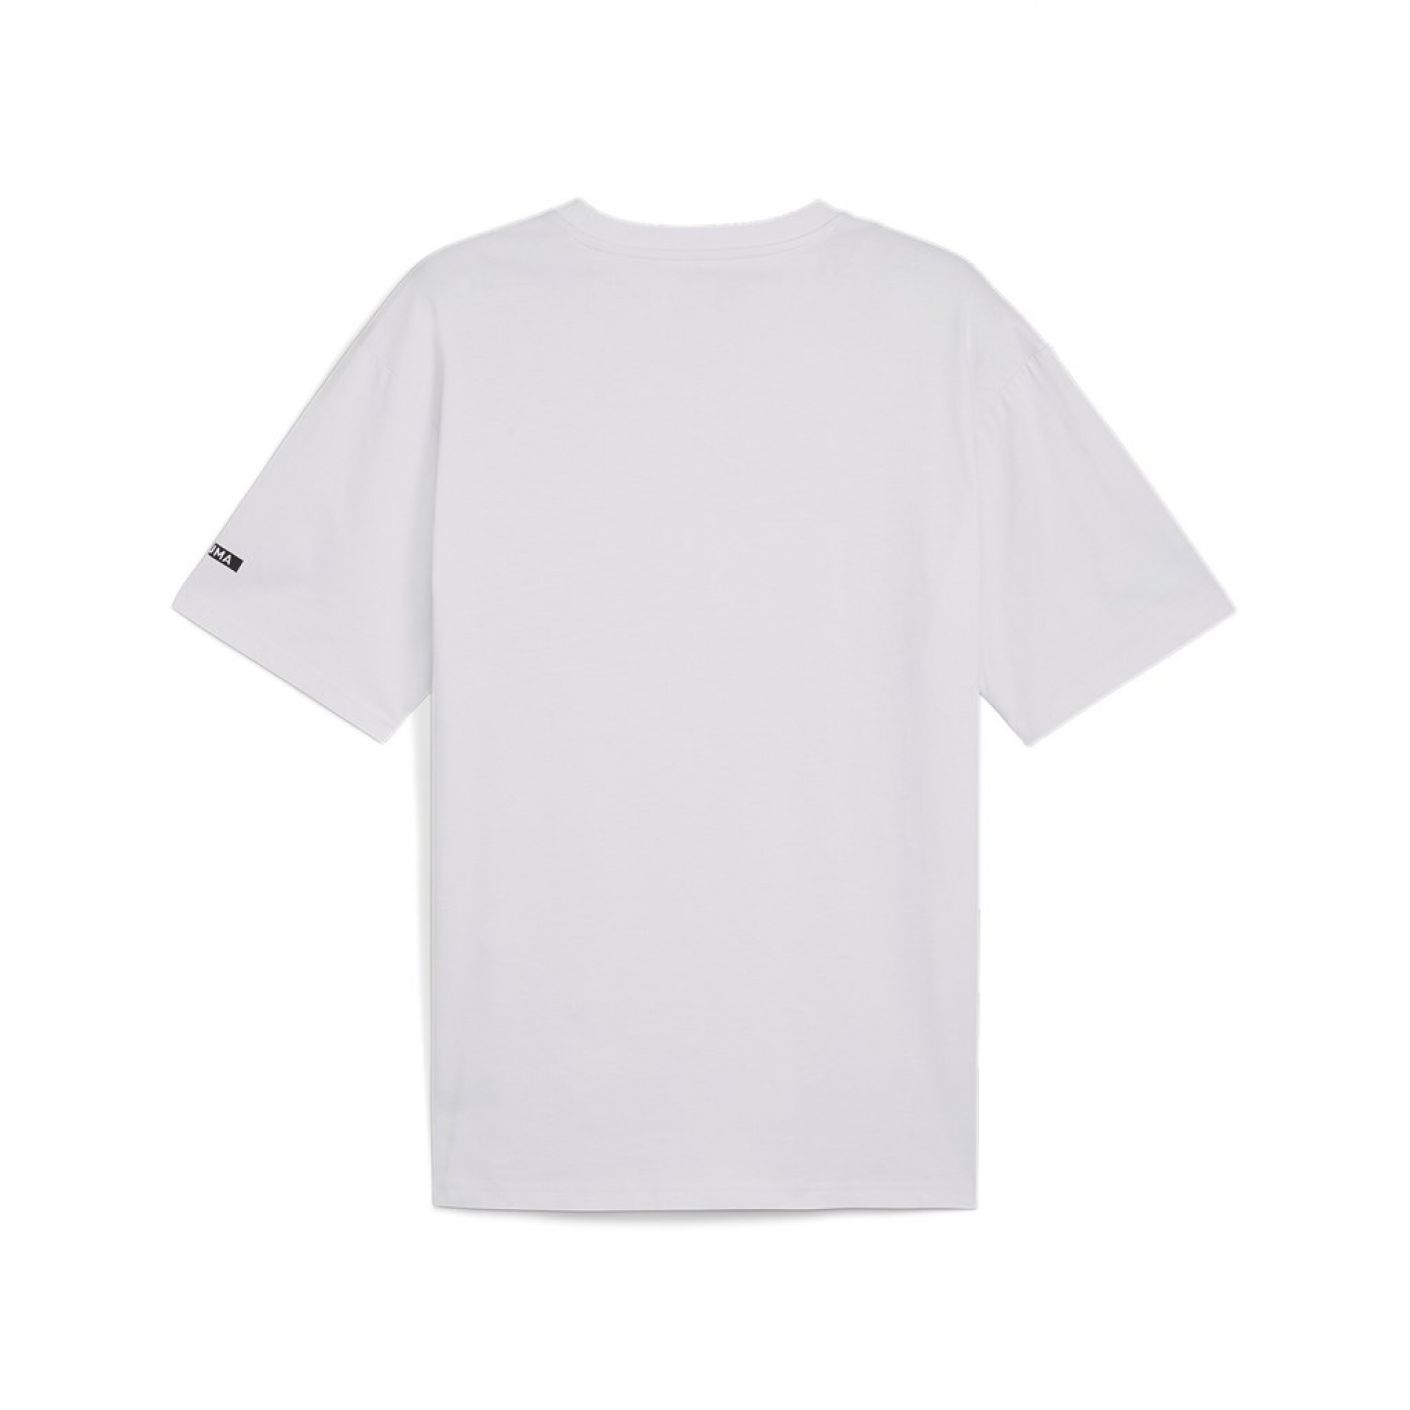 Puma T-Shirt Rad/Cal White da Uomo